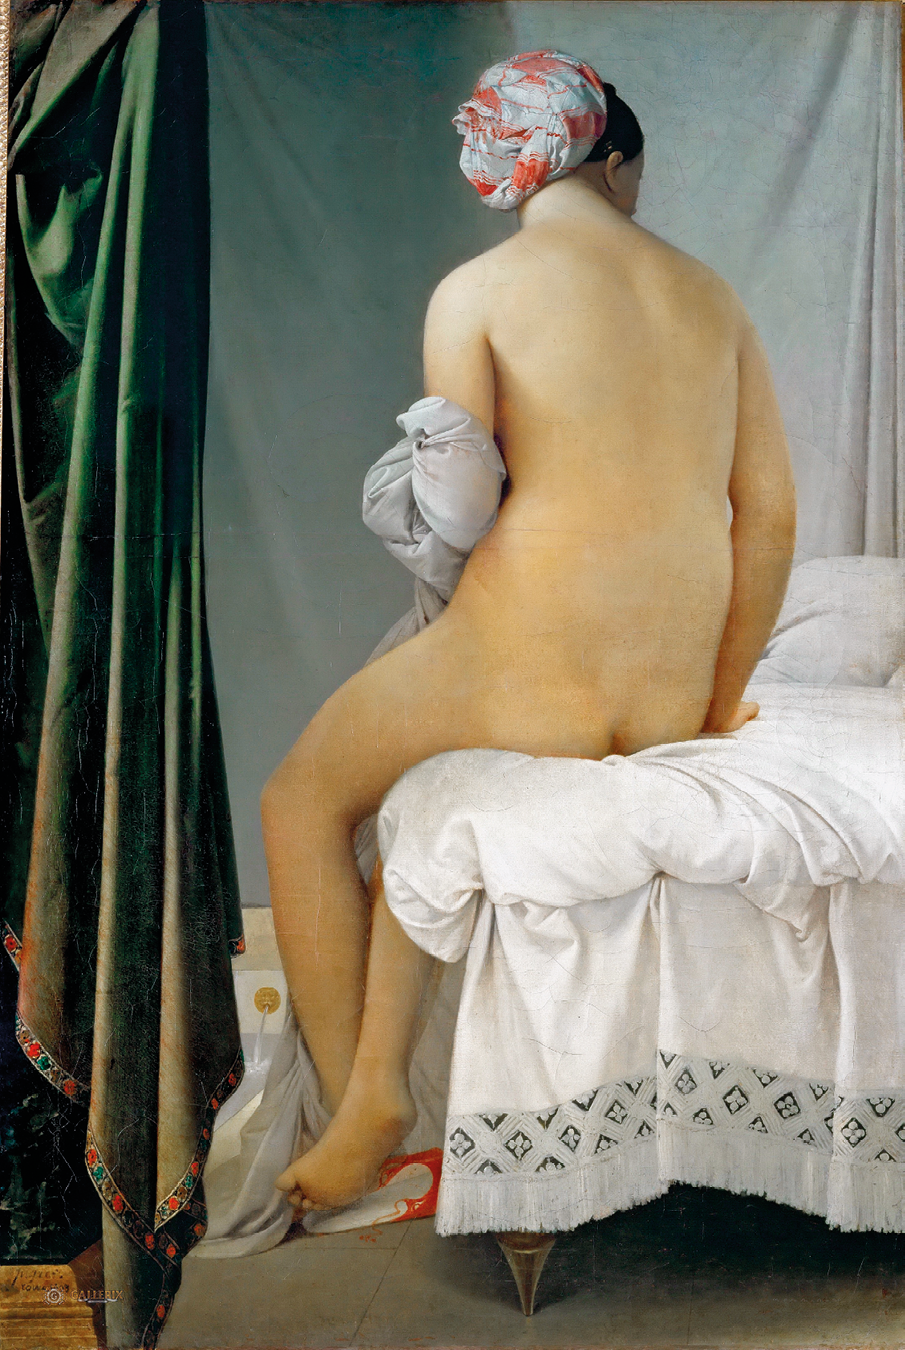 Pintura. Apresenta uma mulher branca nua sentada de costas sobre uma cama com lençol branco, uma toalha nos braços e um lenço claro com detalhes em vermelho preso ao cabelo. À esquerda, há uma cortina verde.